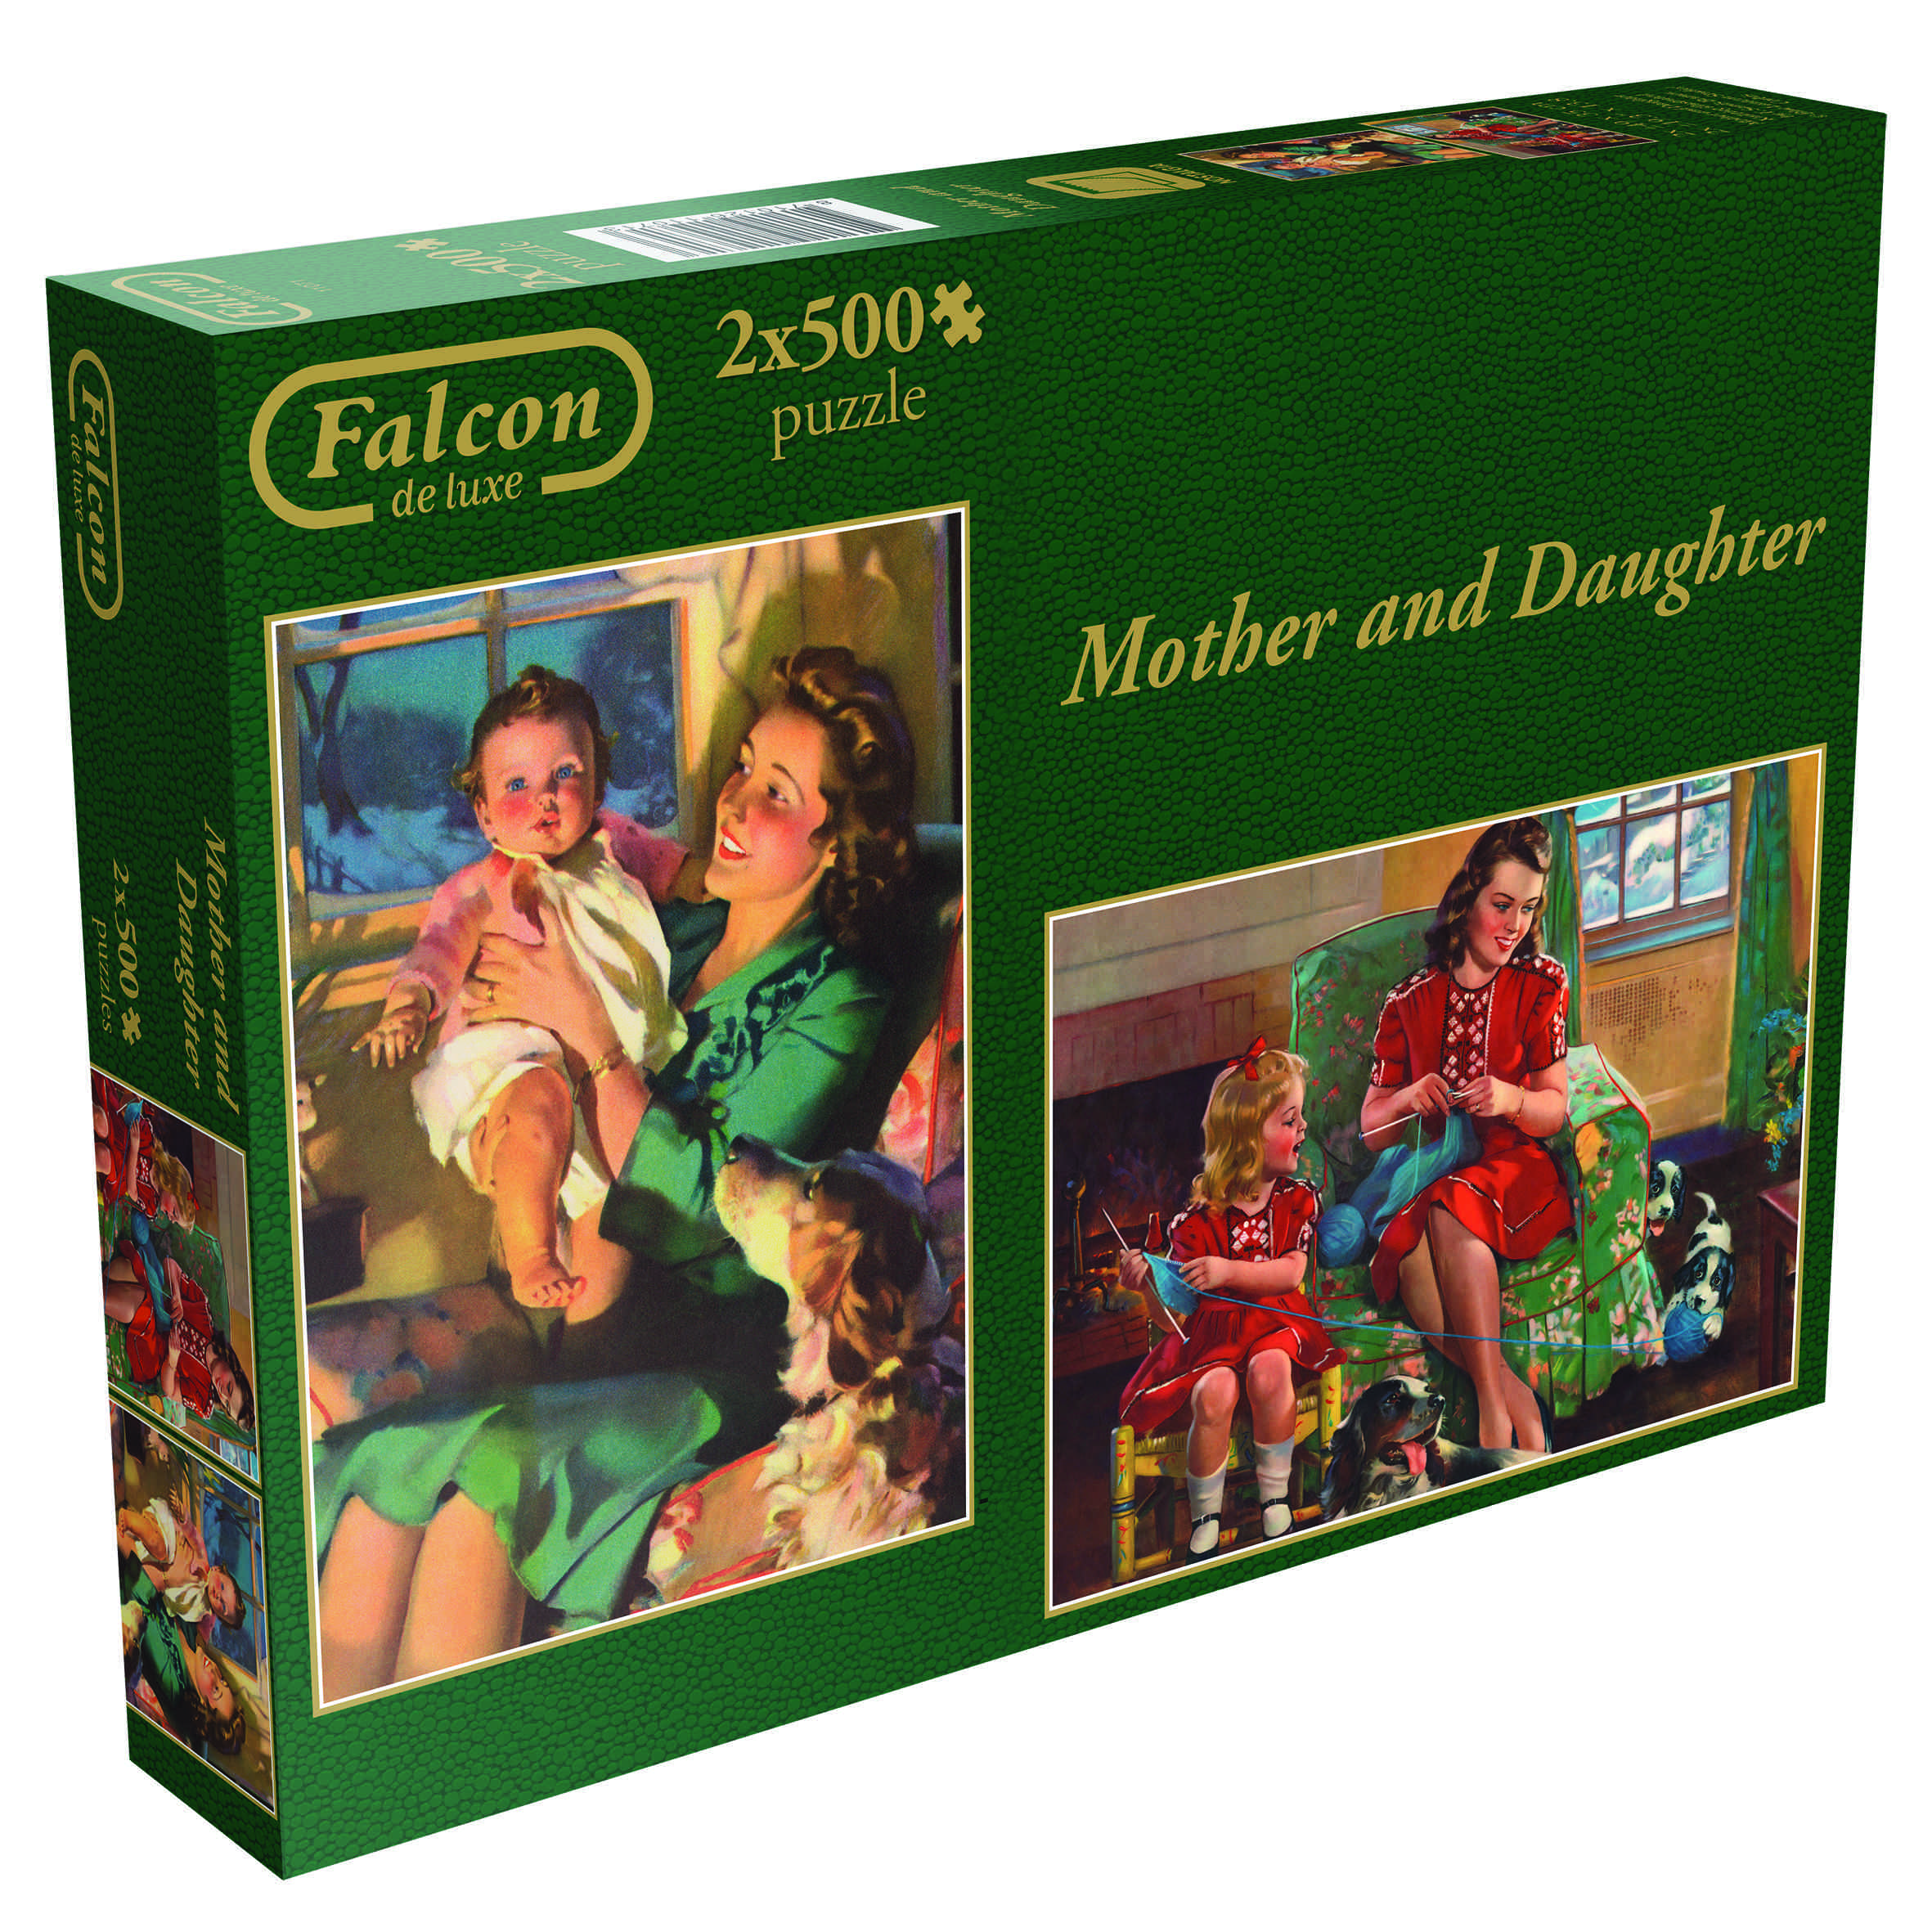 Falcon de Luxe Mother and Daughter jigsaws